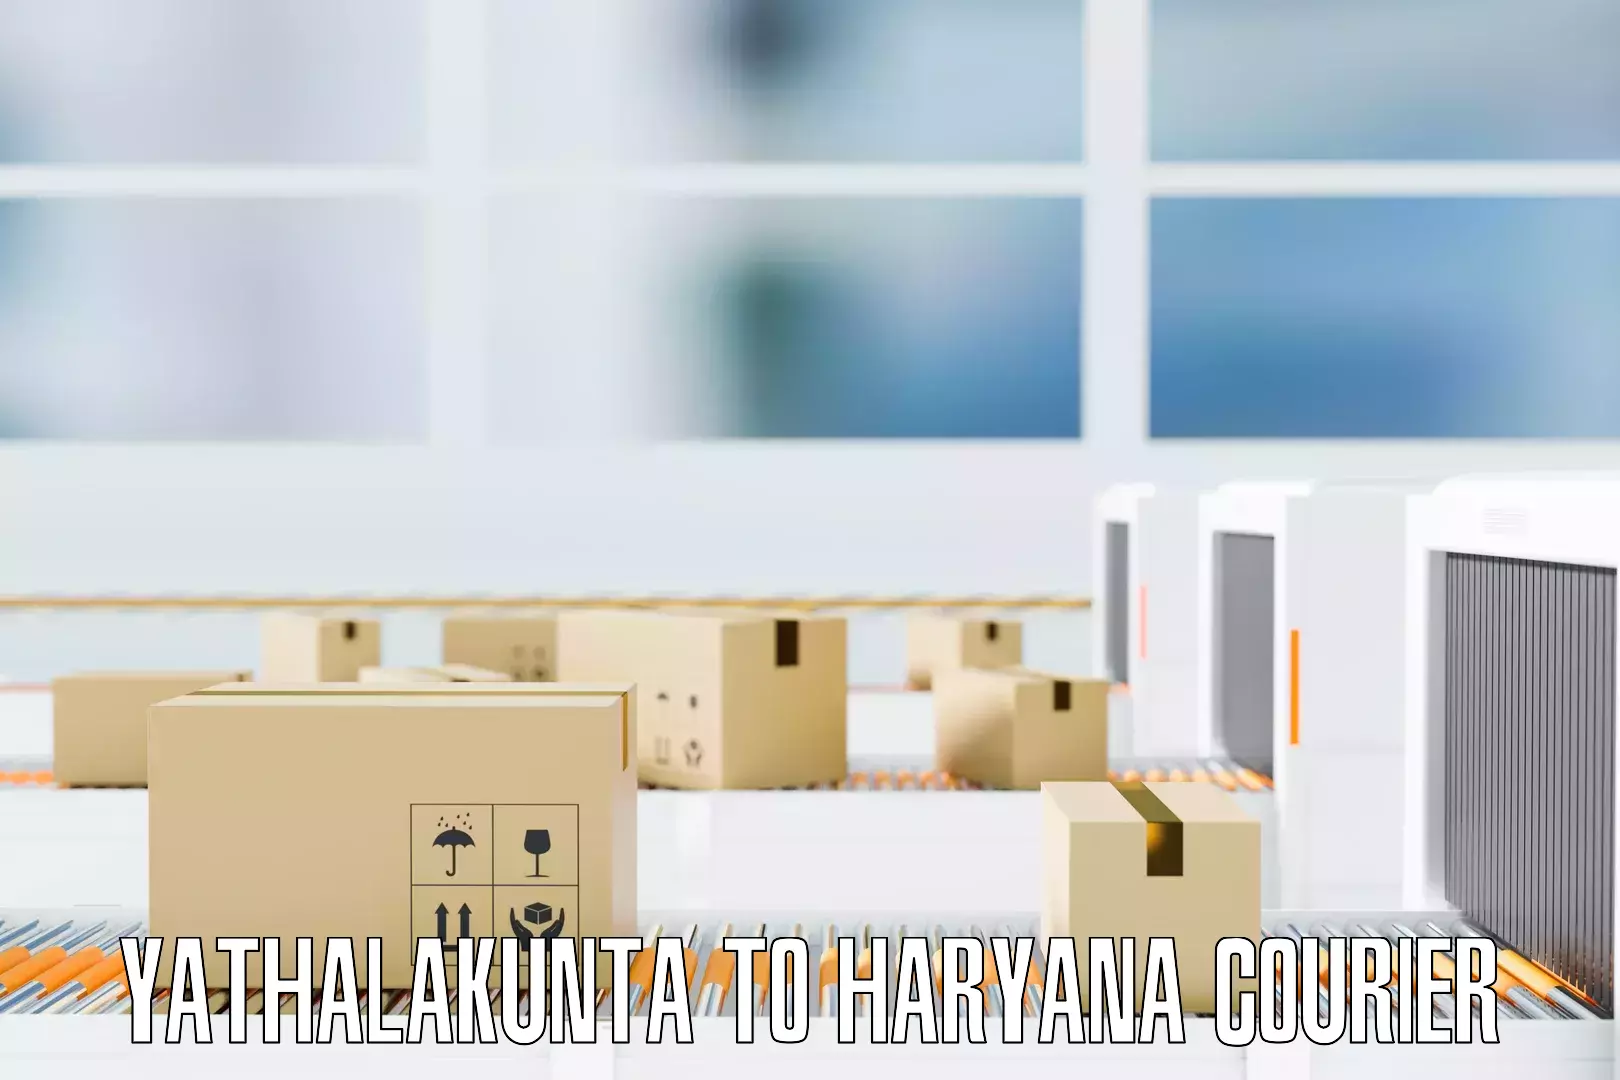 Specialized moving company Yathalakunta to Gurugram